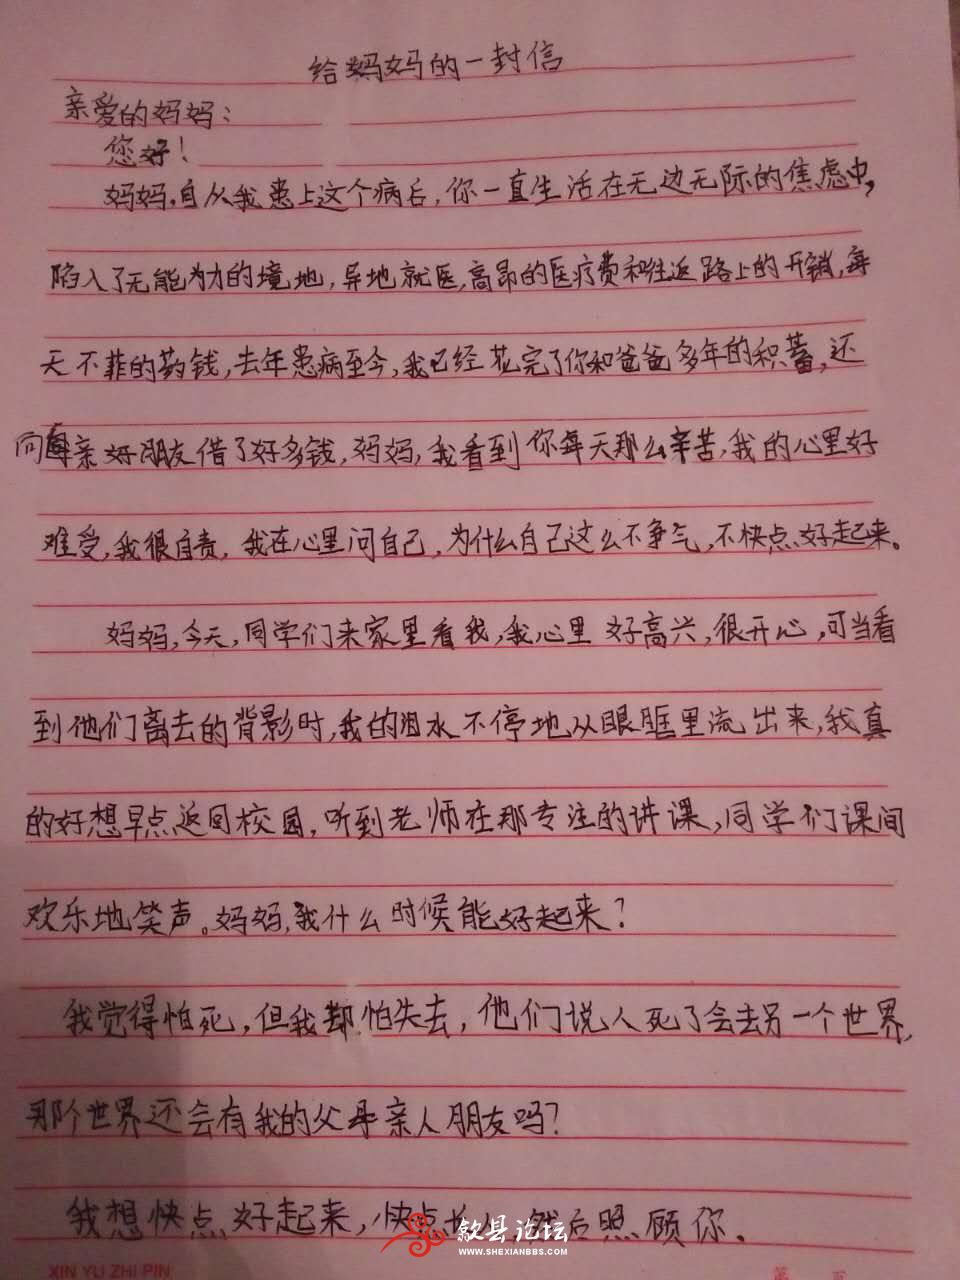 歙县上丰乡10岁吴雅洁(歙县论坛) (52).jpg